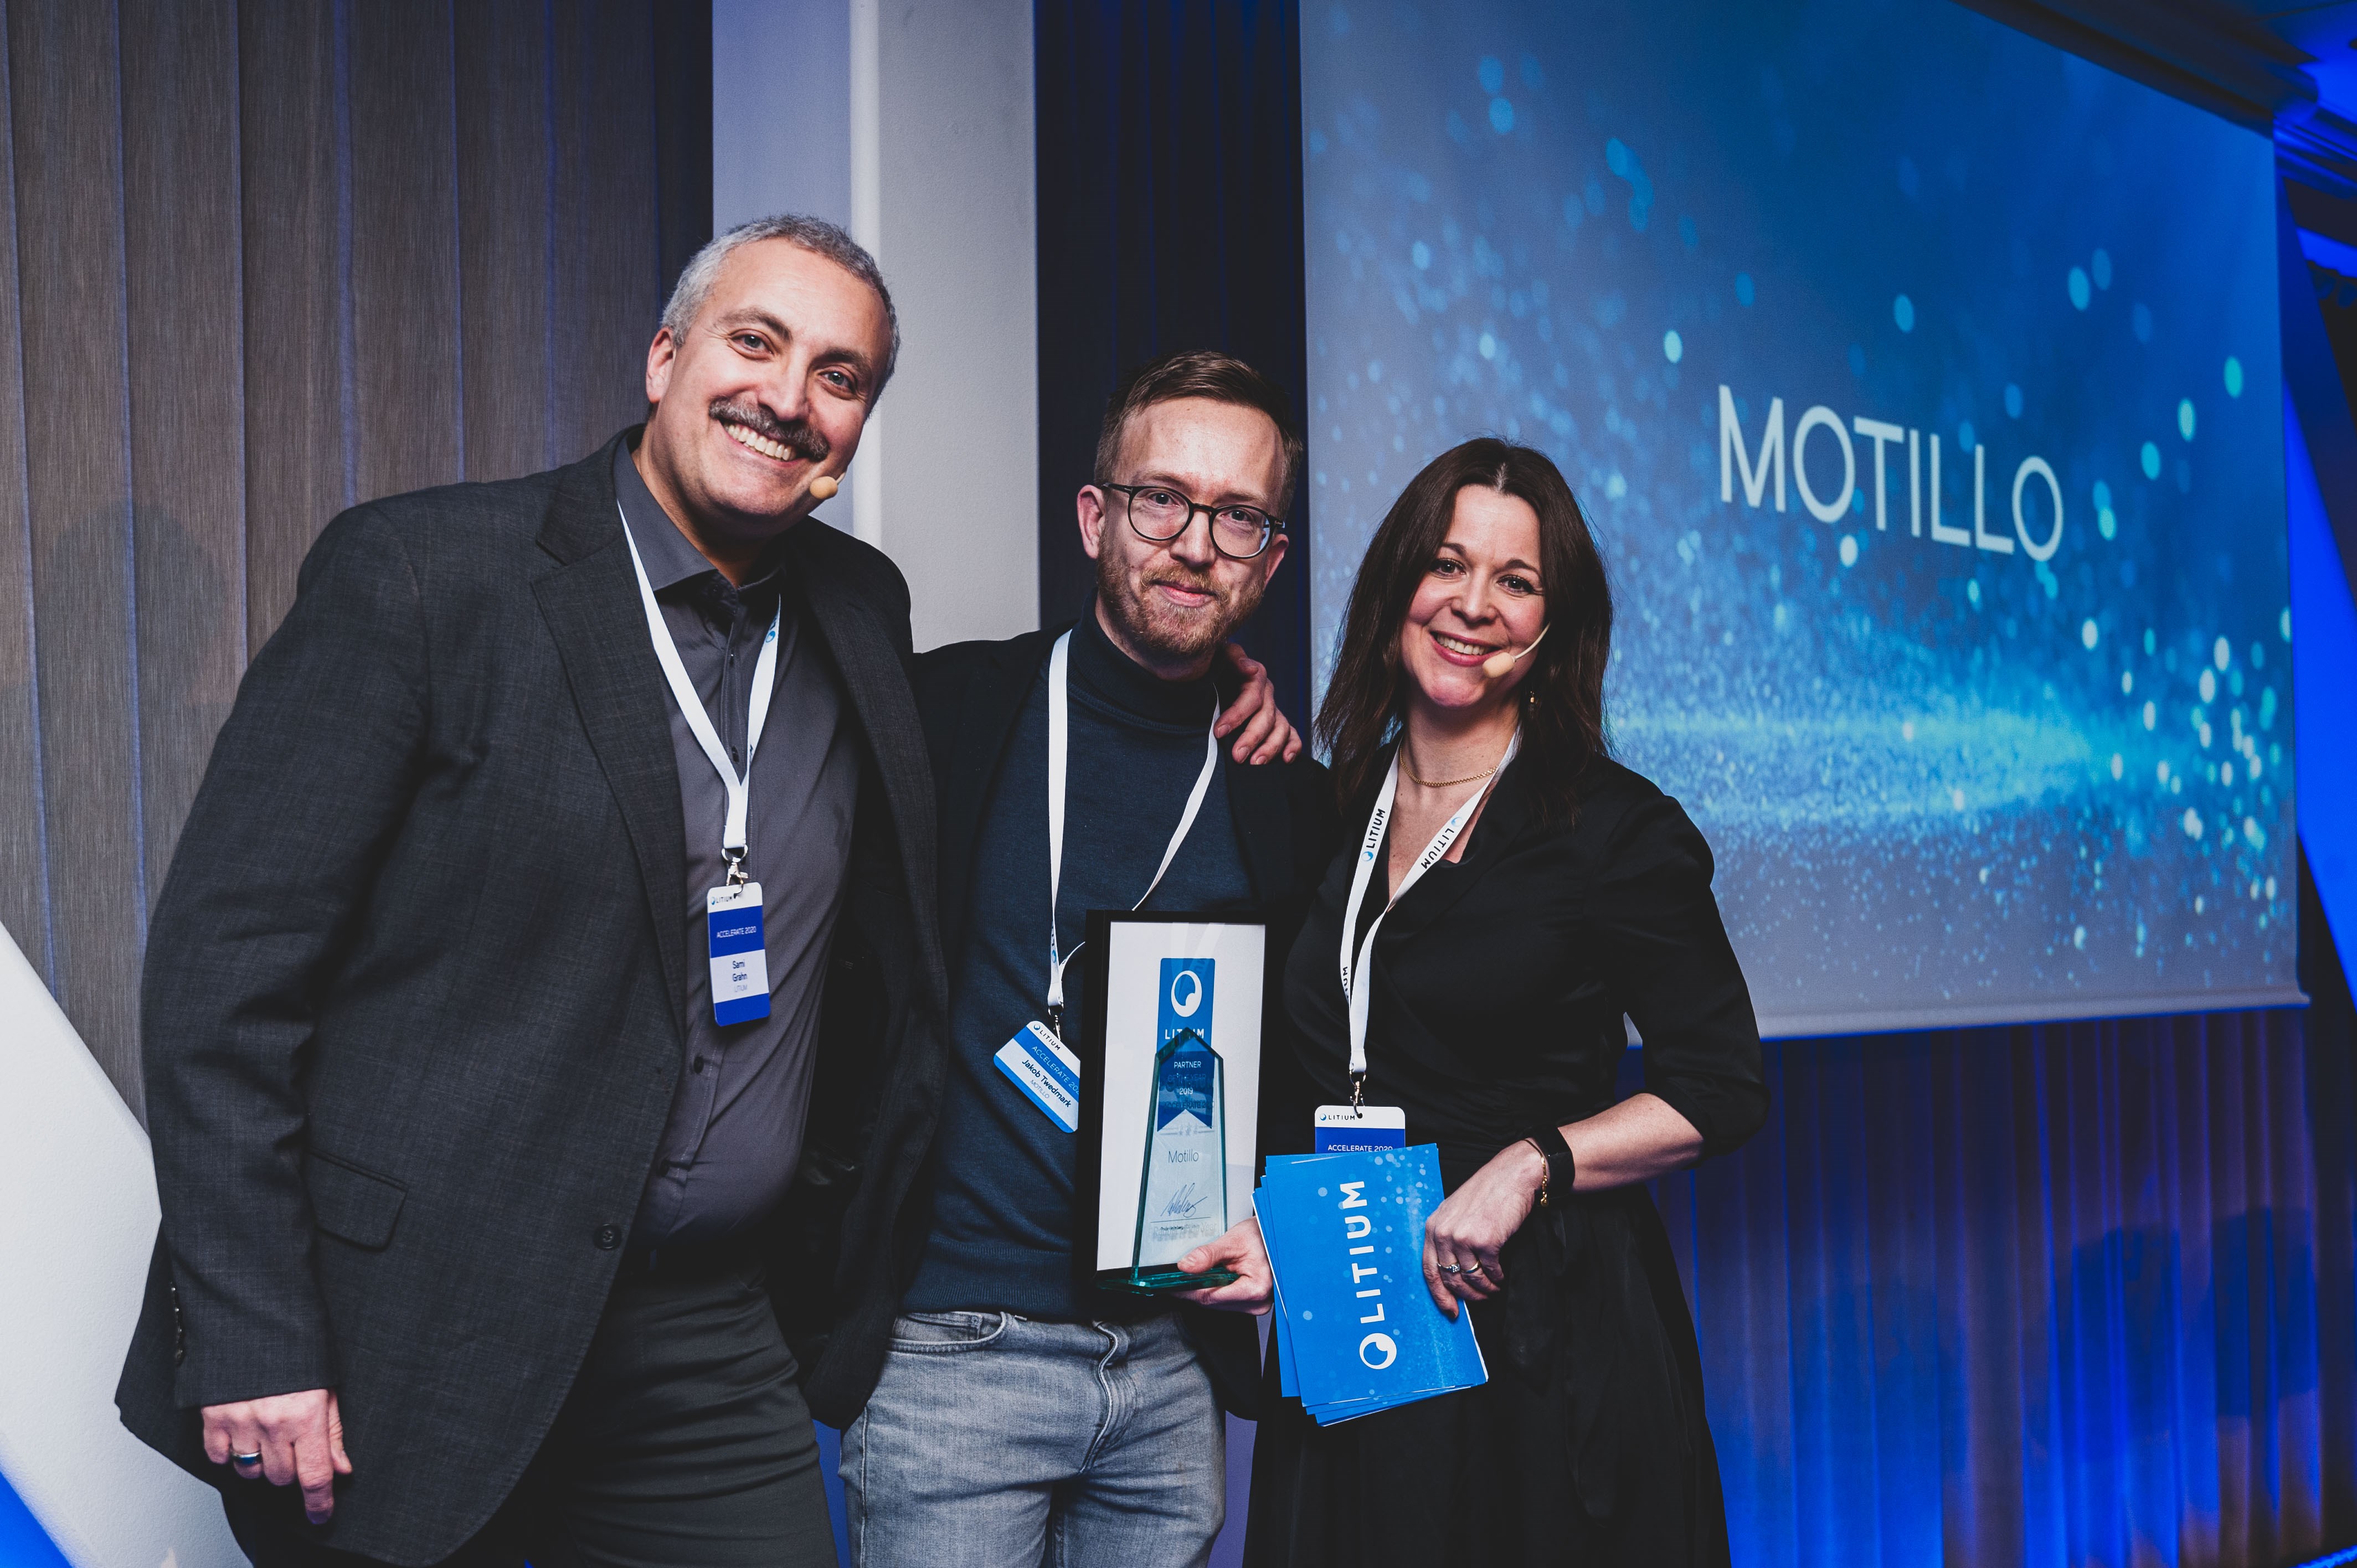 Motillo utses till Litium Partner of the Year 2020